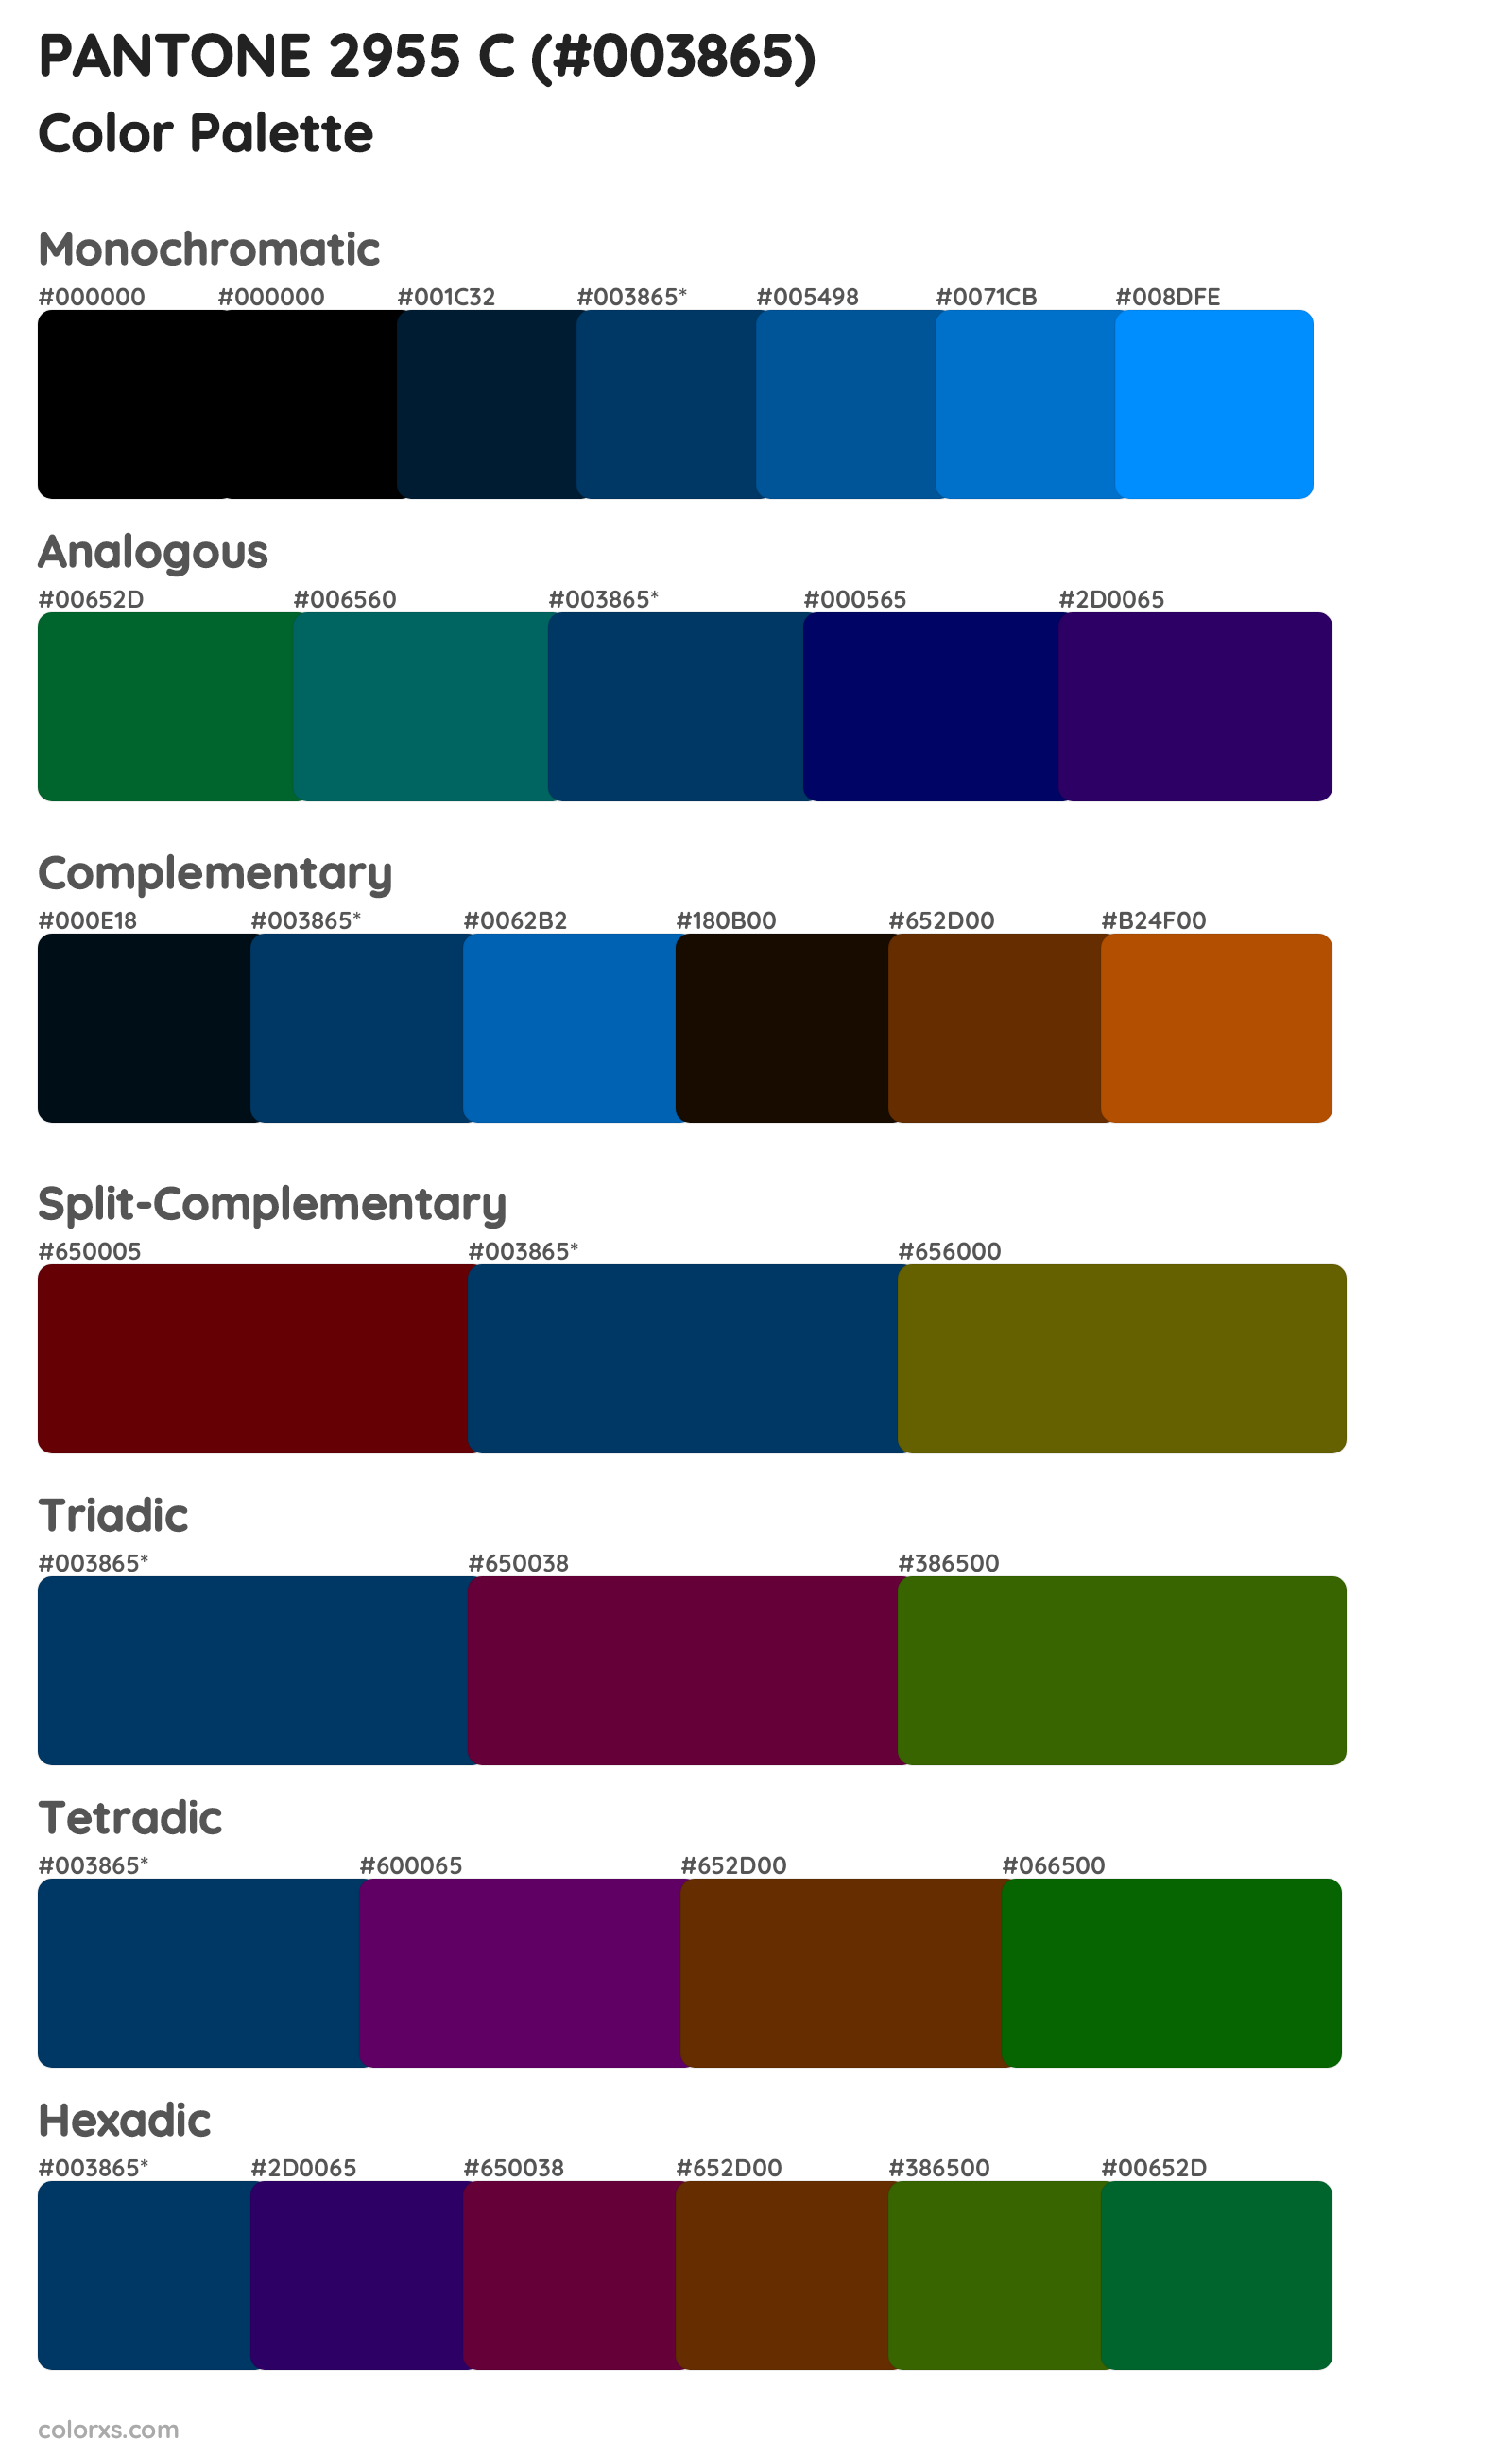 PANTONE 2955 C Color Scheme Palettes